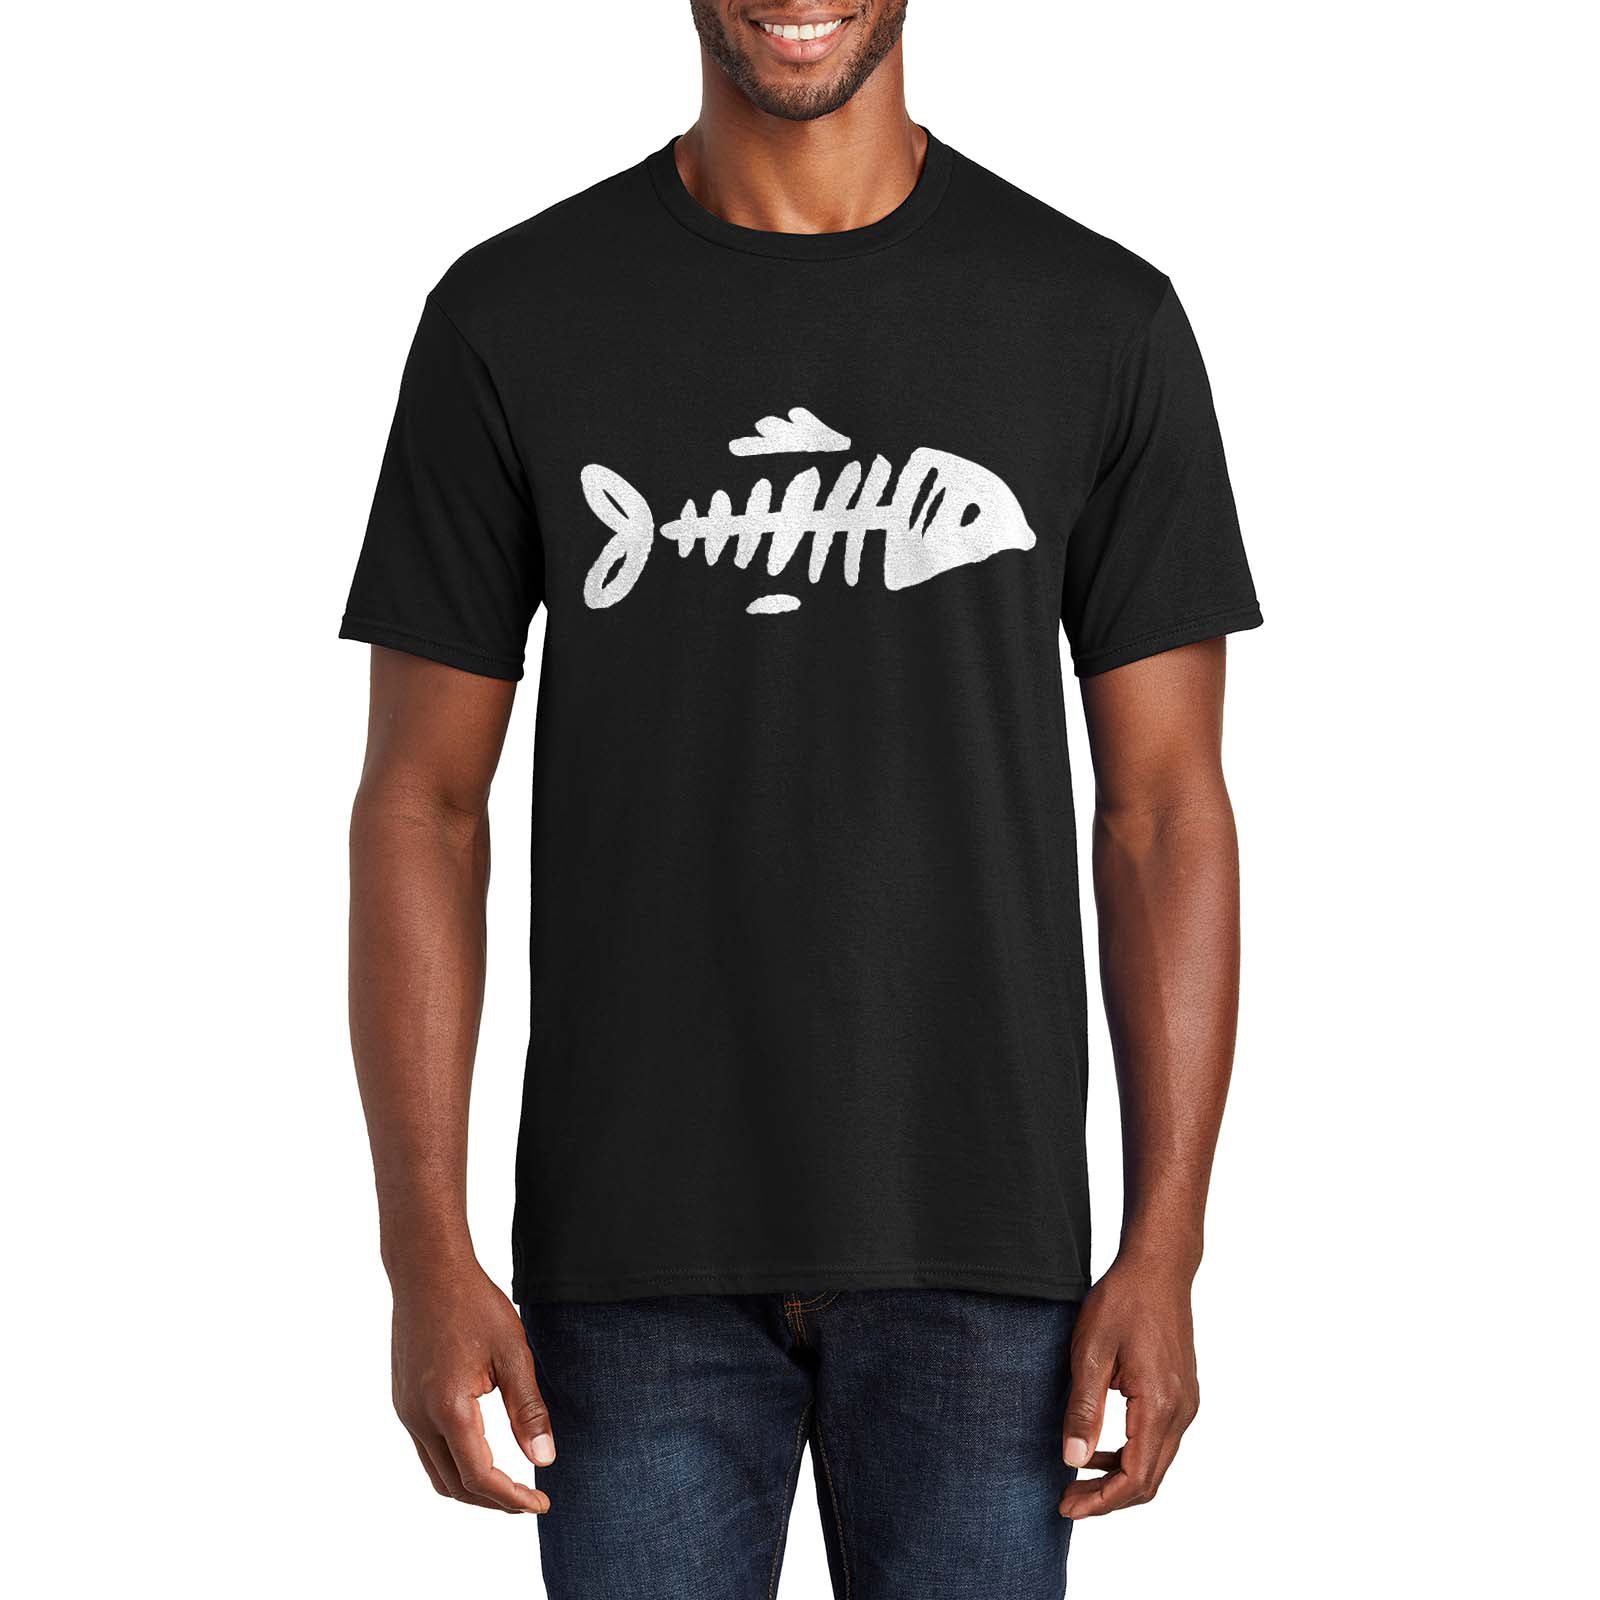 Bare Bone Fish Graphic Men's Premium Crew Neck Tee Shirt, Leisure Designed